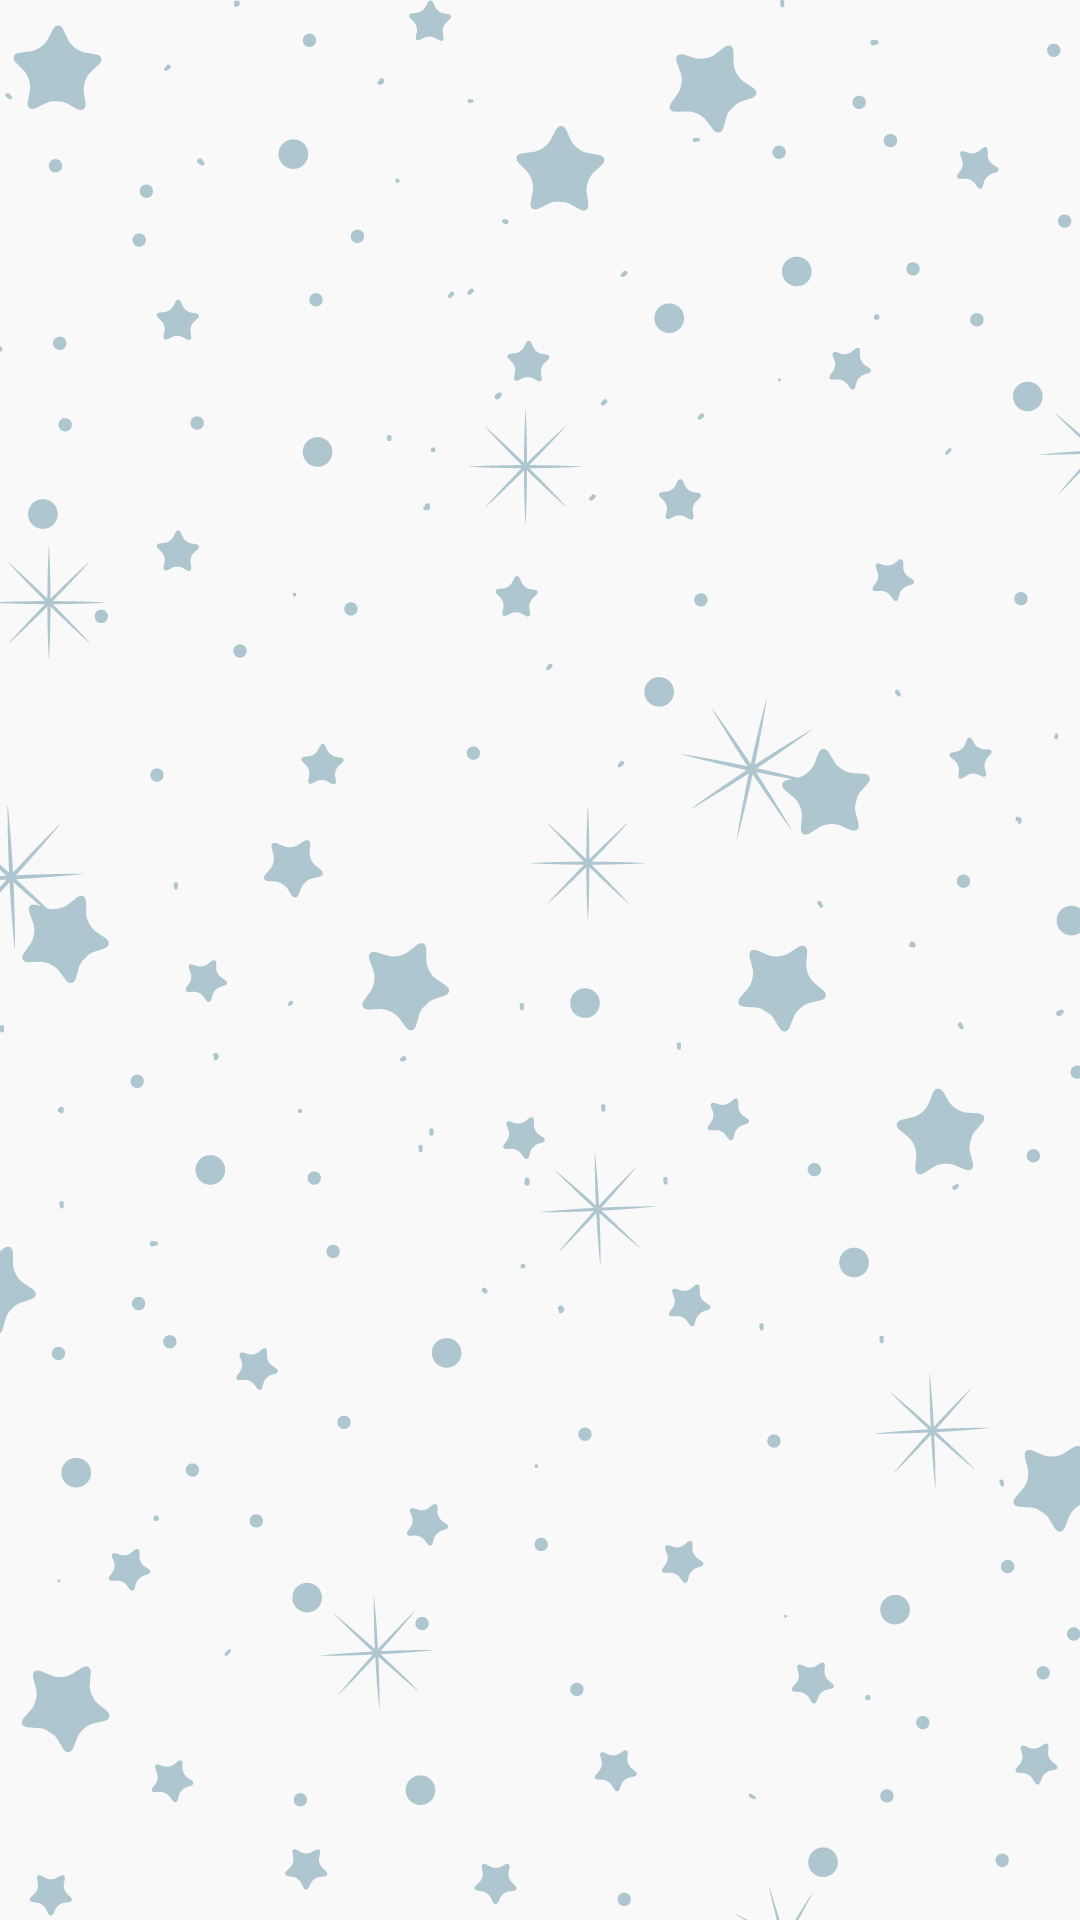 Free Pastel Star Background - Download in Illustrator, EPS, SVG, JPG ...